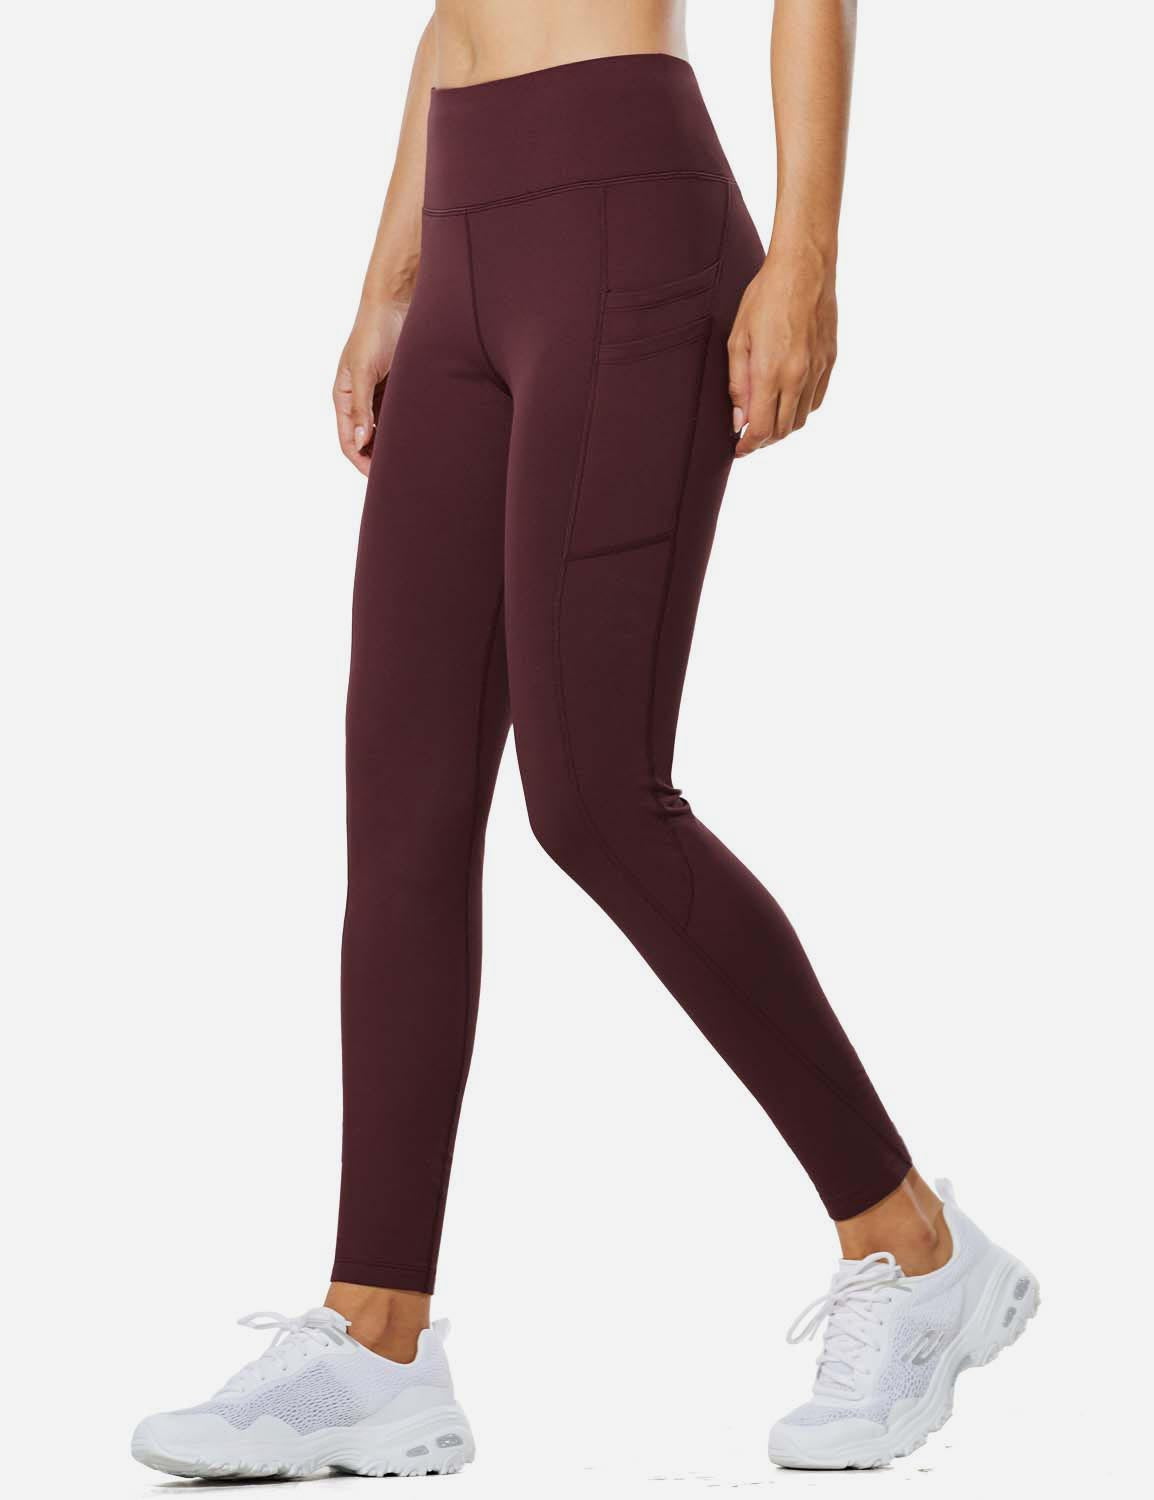 Lululemon fleece lined full length leggings women's size 4 purple